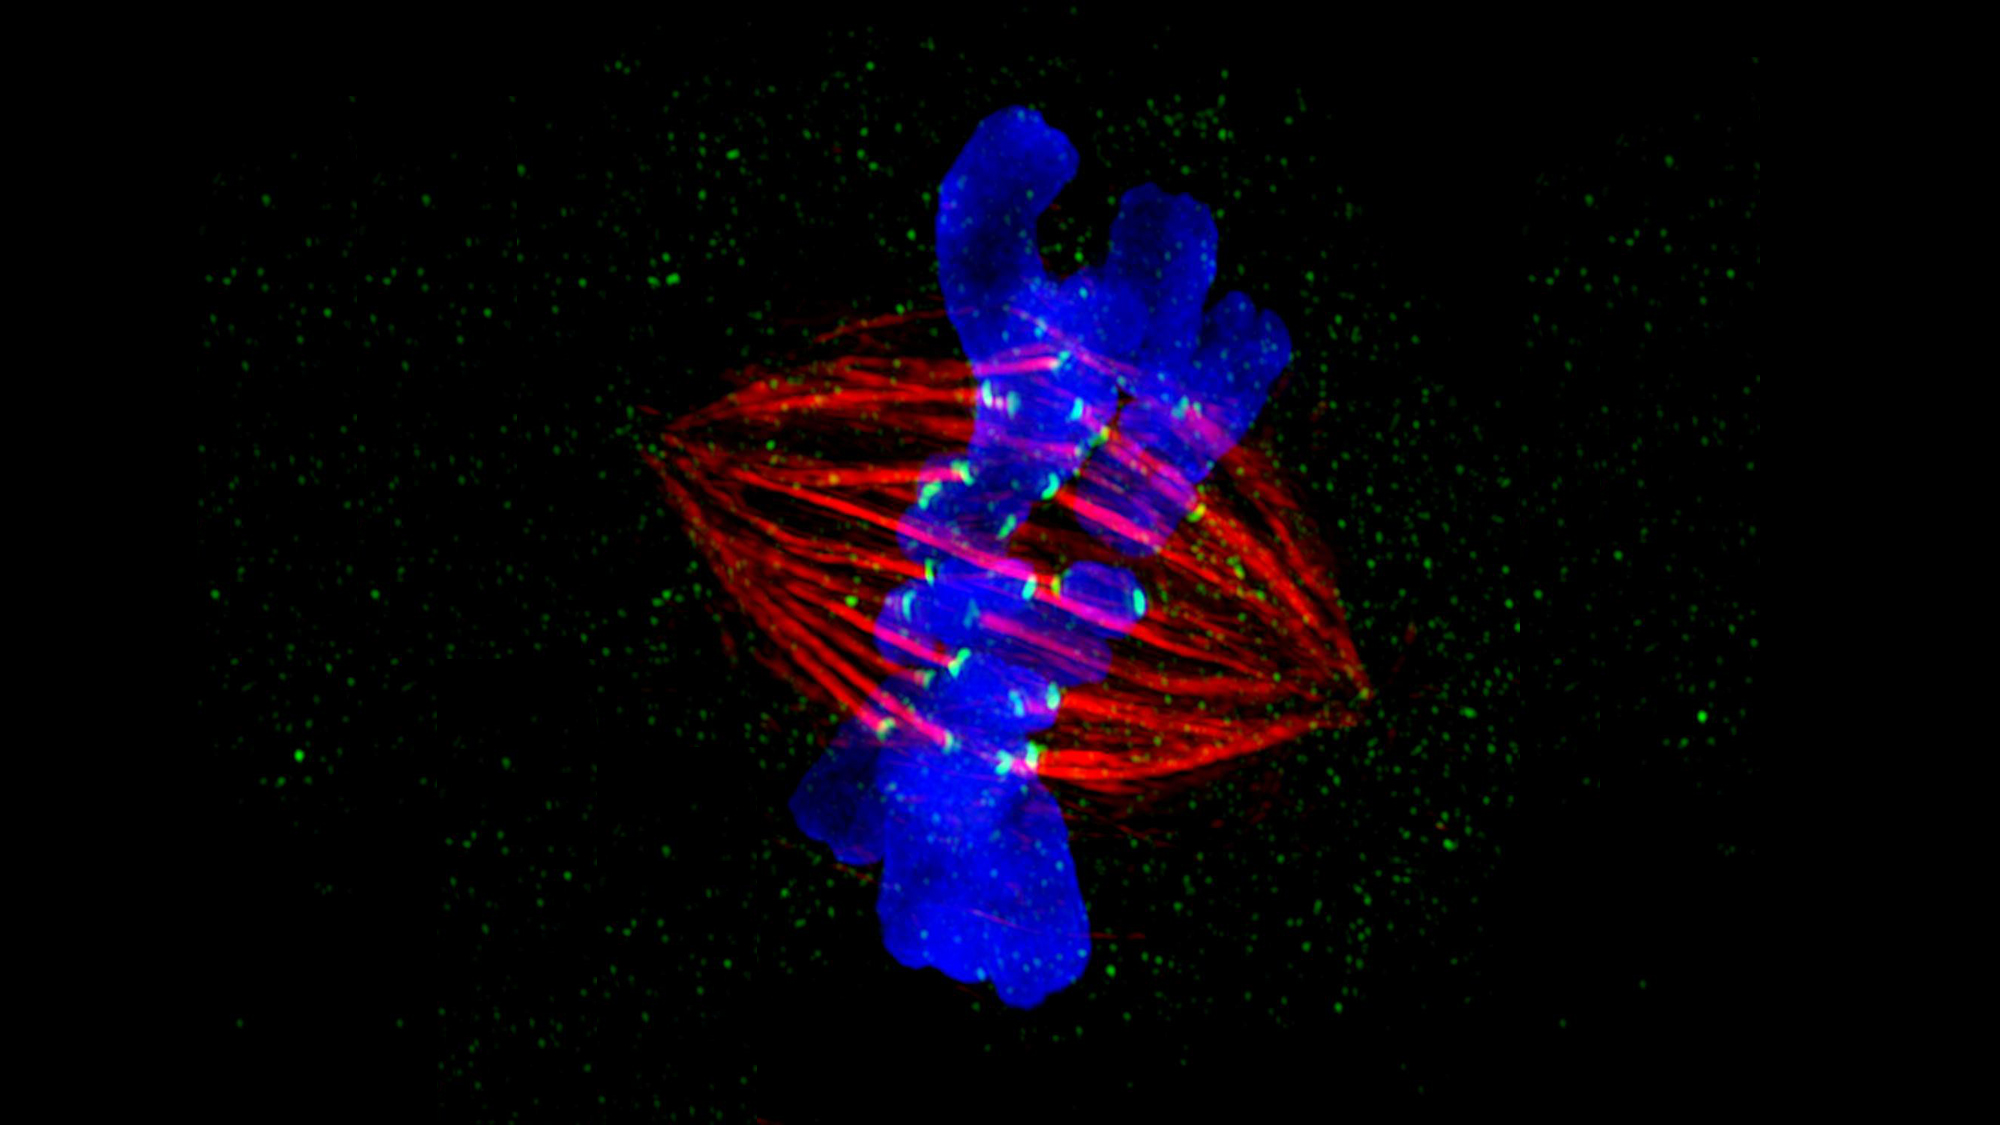 Una de las becas de 10 millones de euros tratará de entender uno de los procesos más fundamentales de la vida: la división celular. Foto de ZEISS Microscopy en Foter.com / CC BY-NC-ND